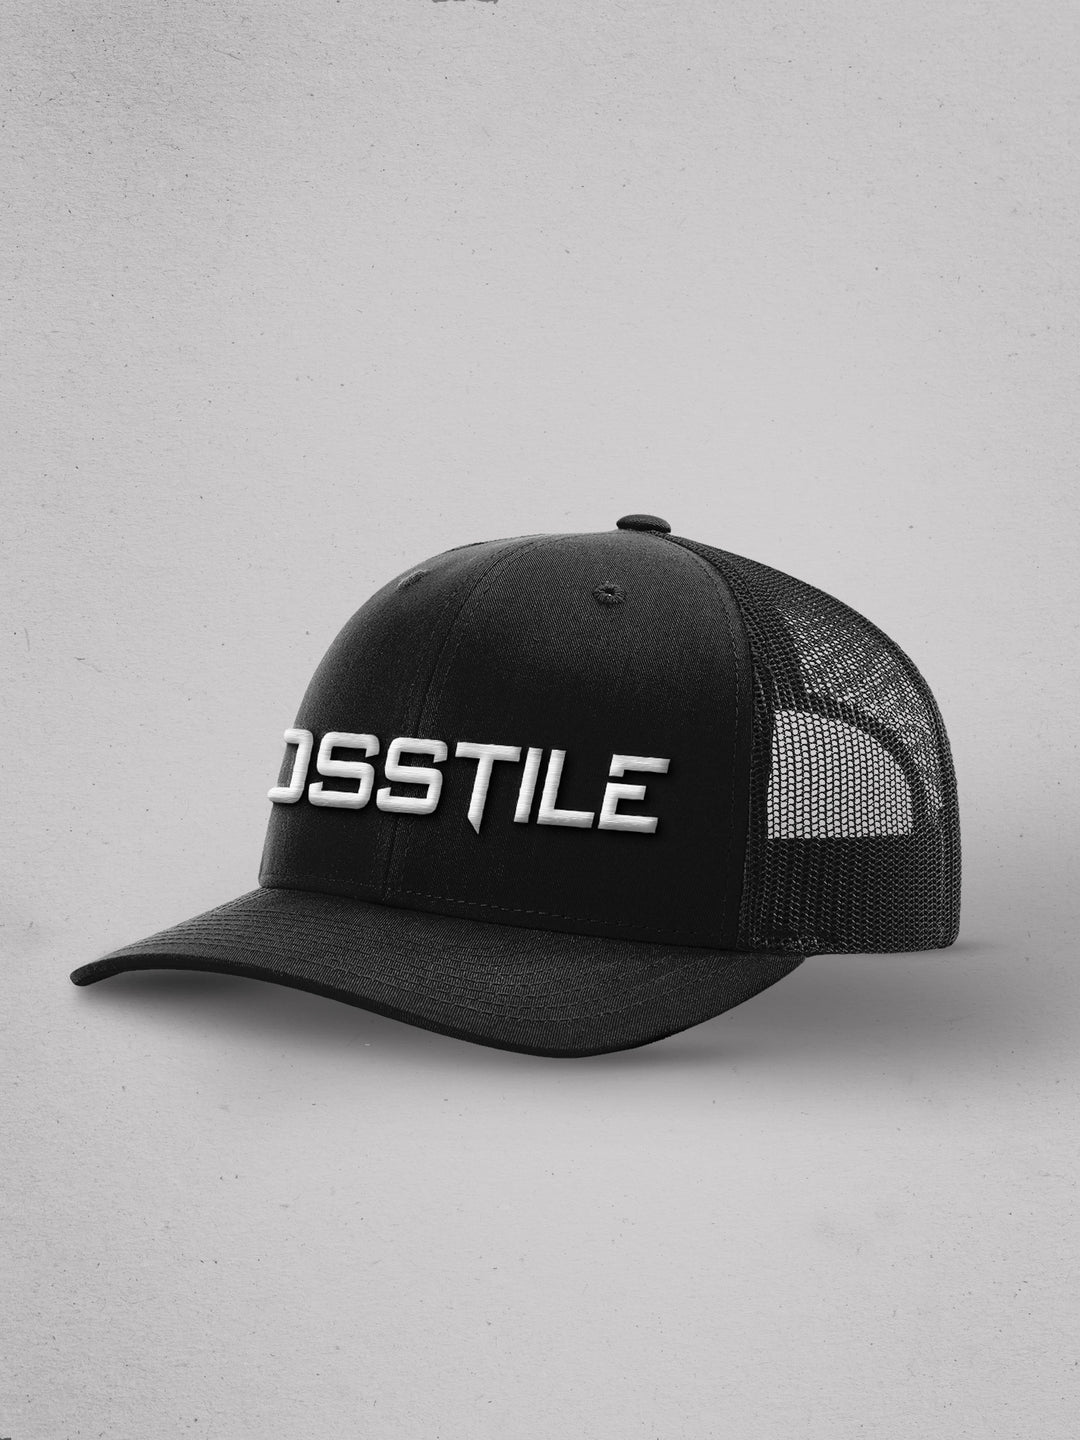 Hosstile Trucker Hat One Size Black